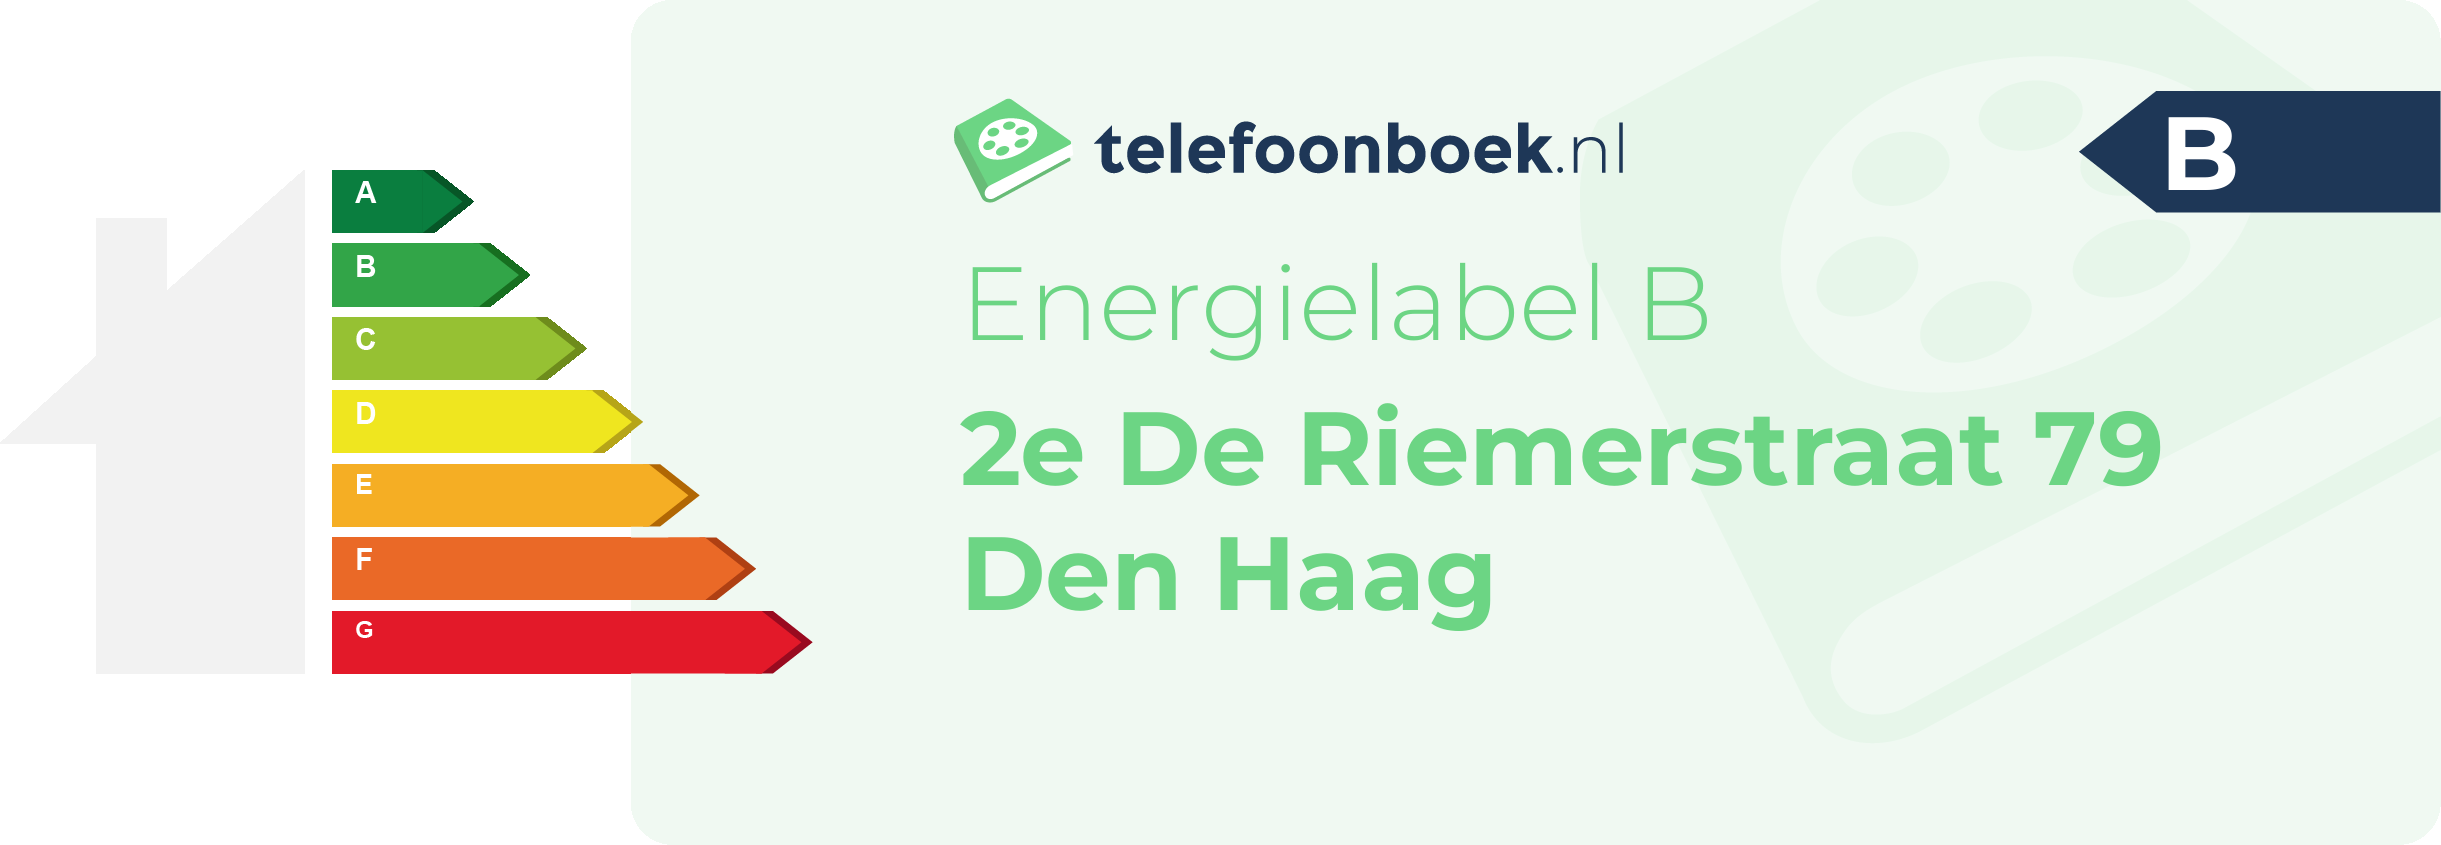 Energielabel 2e De Riemerstraat 79 Den Haag